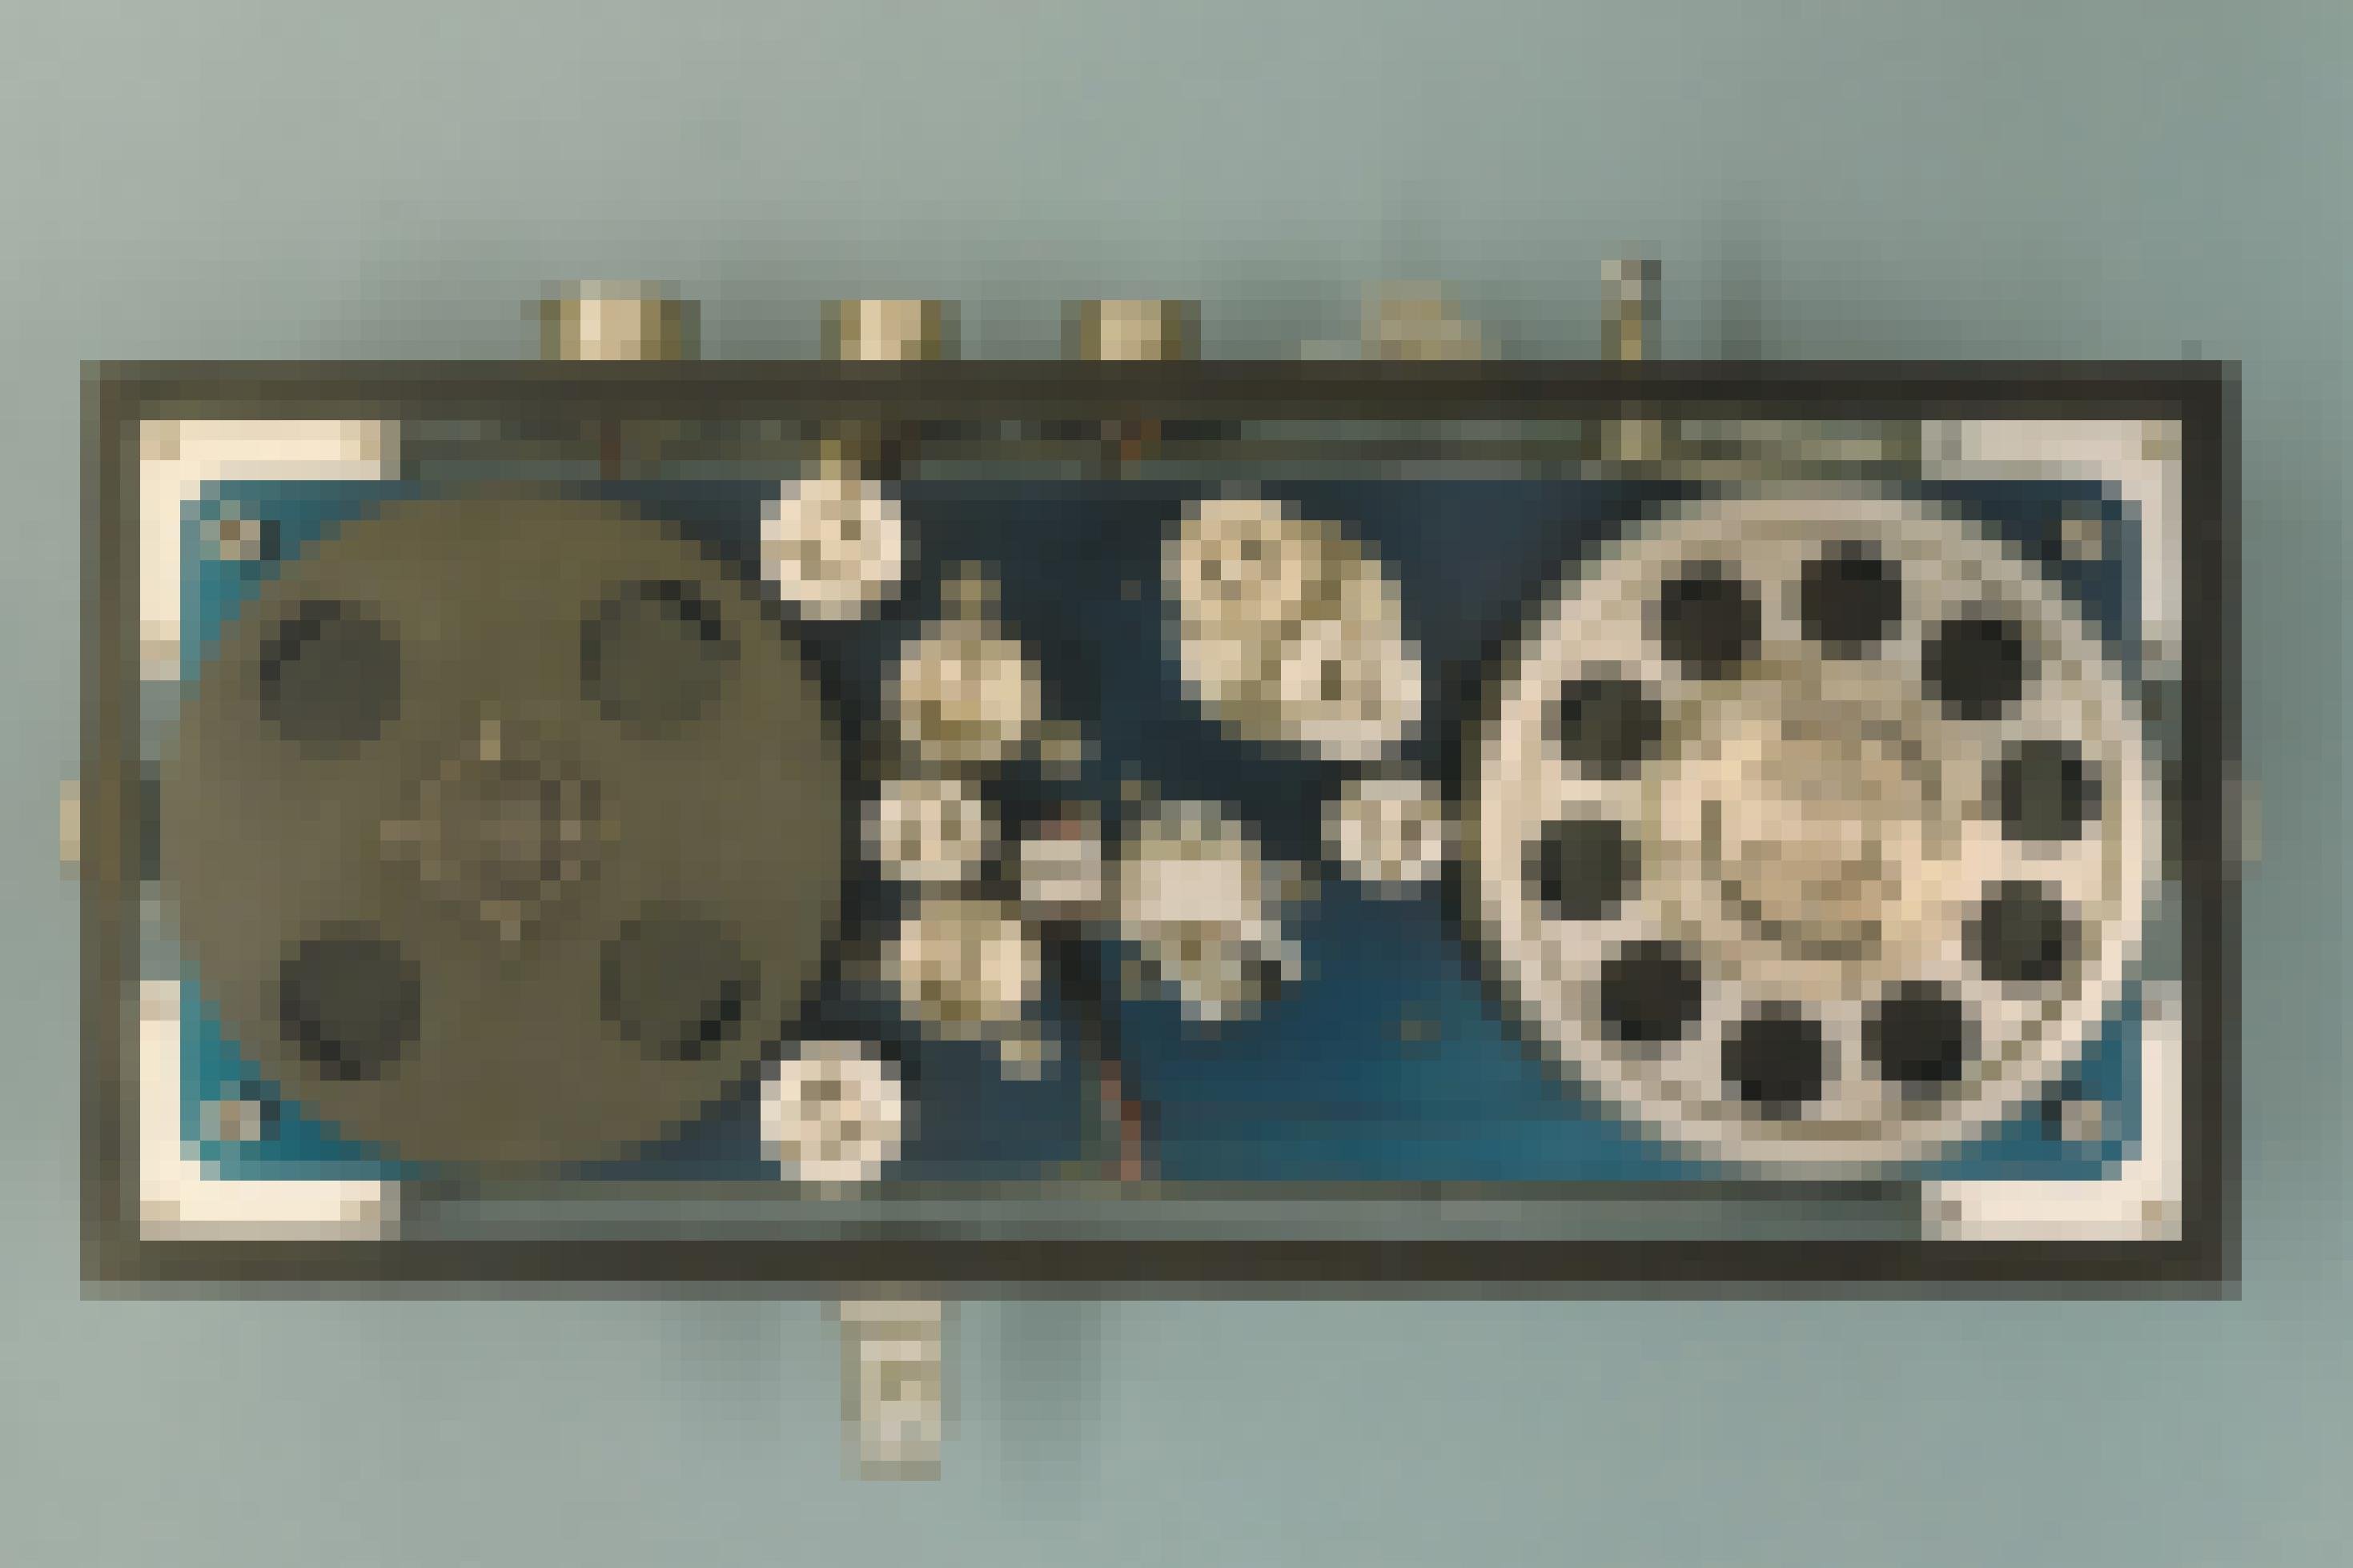 Ein Foto zeigt ein spezielles Magnetbandgerät, das einem klassischen Tonbandgerät ähnelt: Von einer linken Spule wird ein Magnetband über verschiedene Rollen und einen Schreib-Lese-Kopf zu einer rechten Spule geführt.